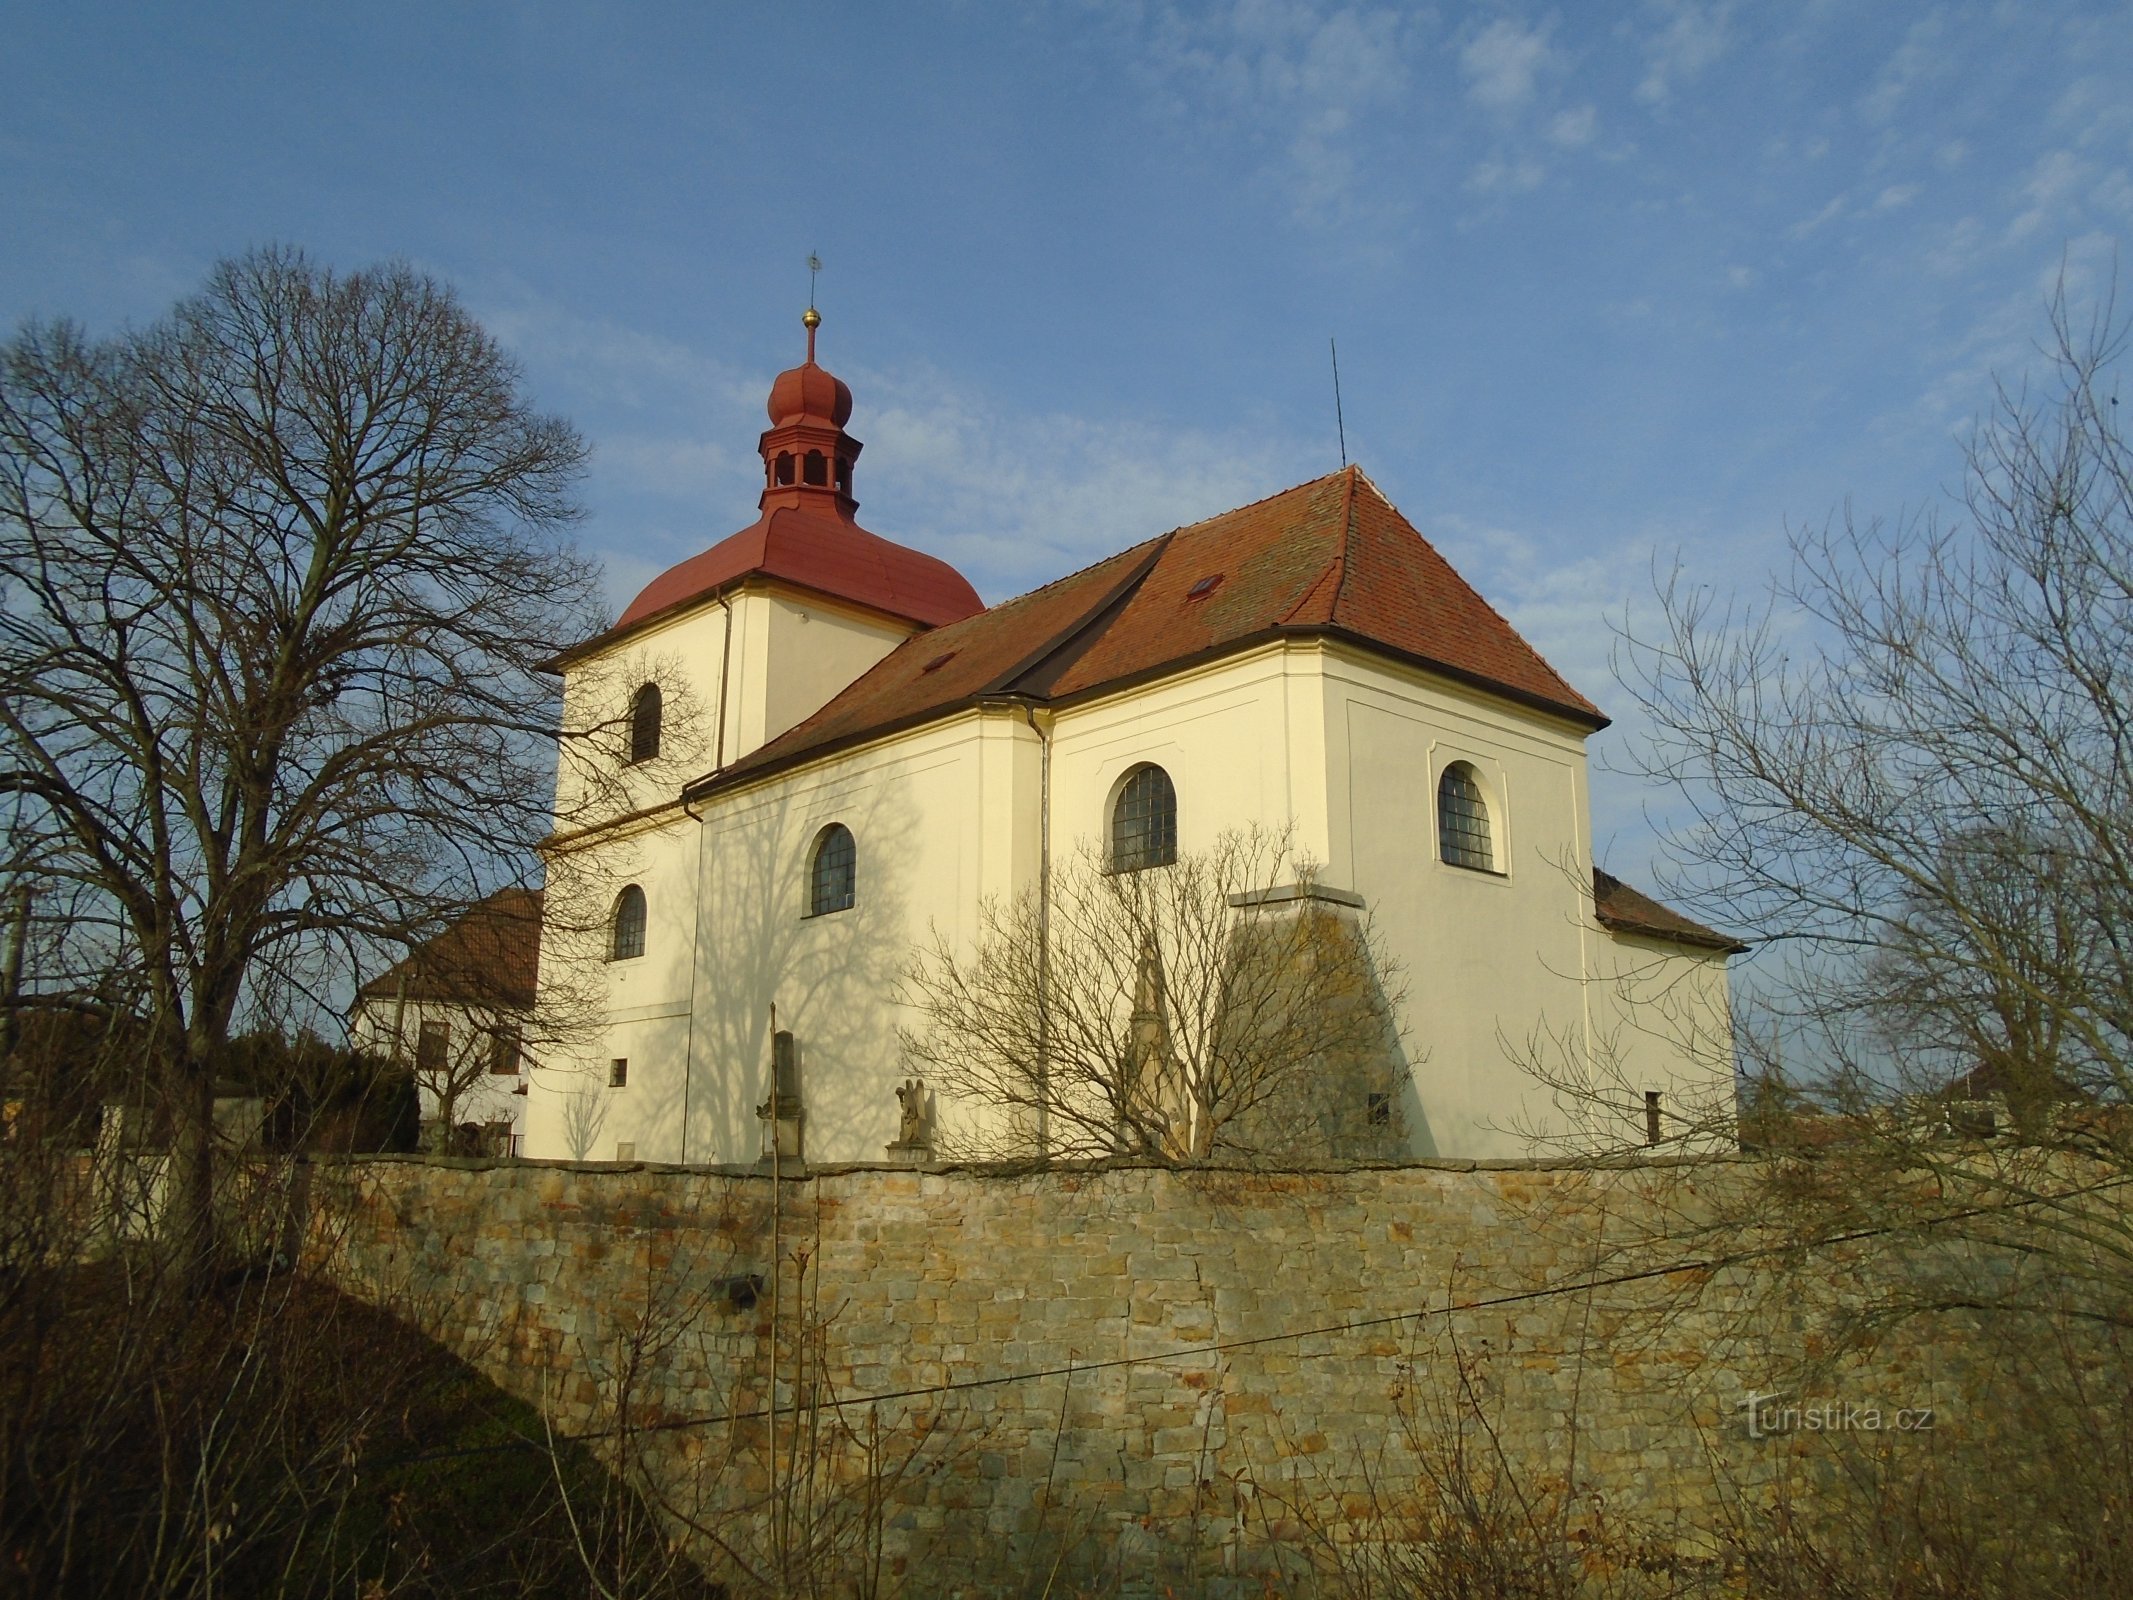 Cerkev sv. Stanislav, škof in mučenik (Sendražice)